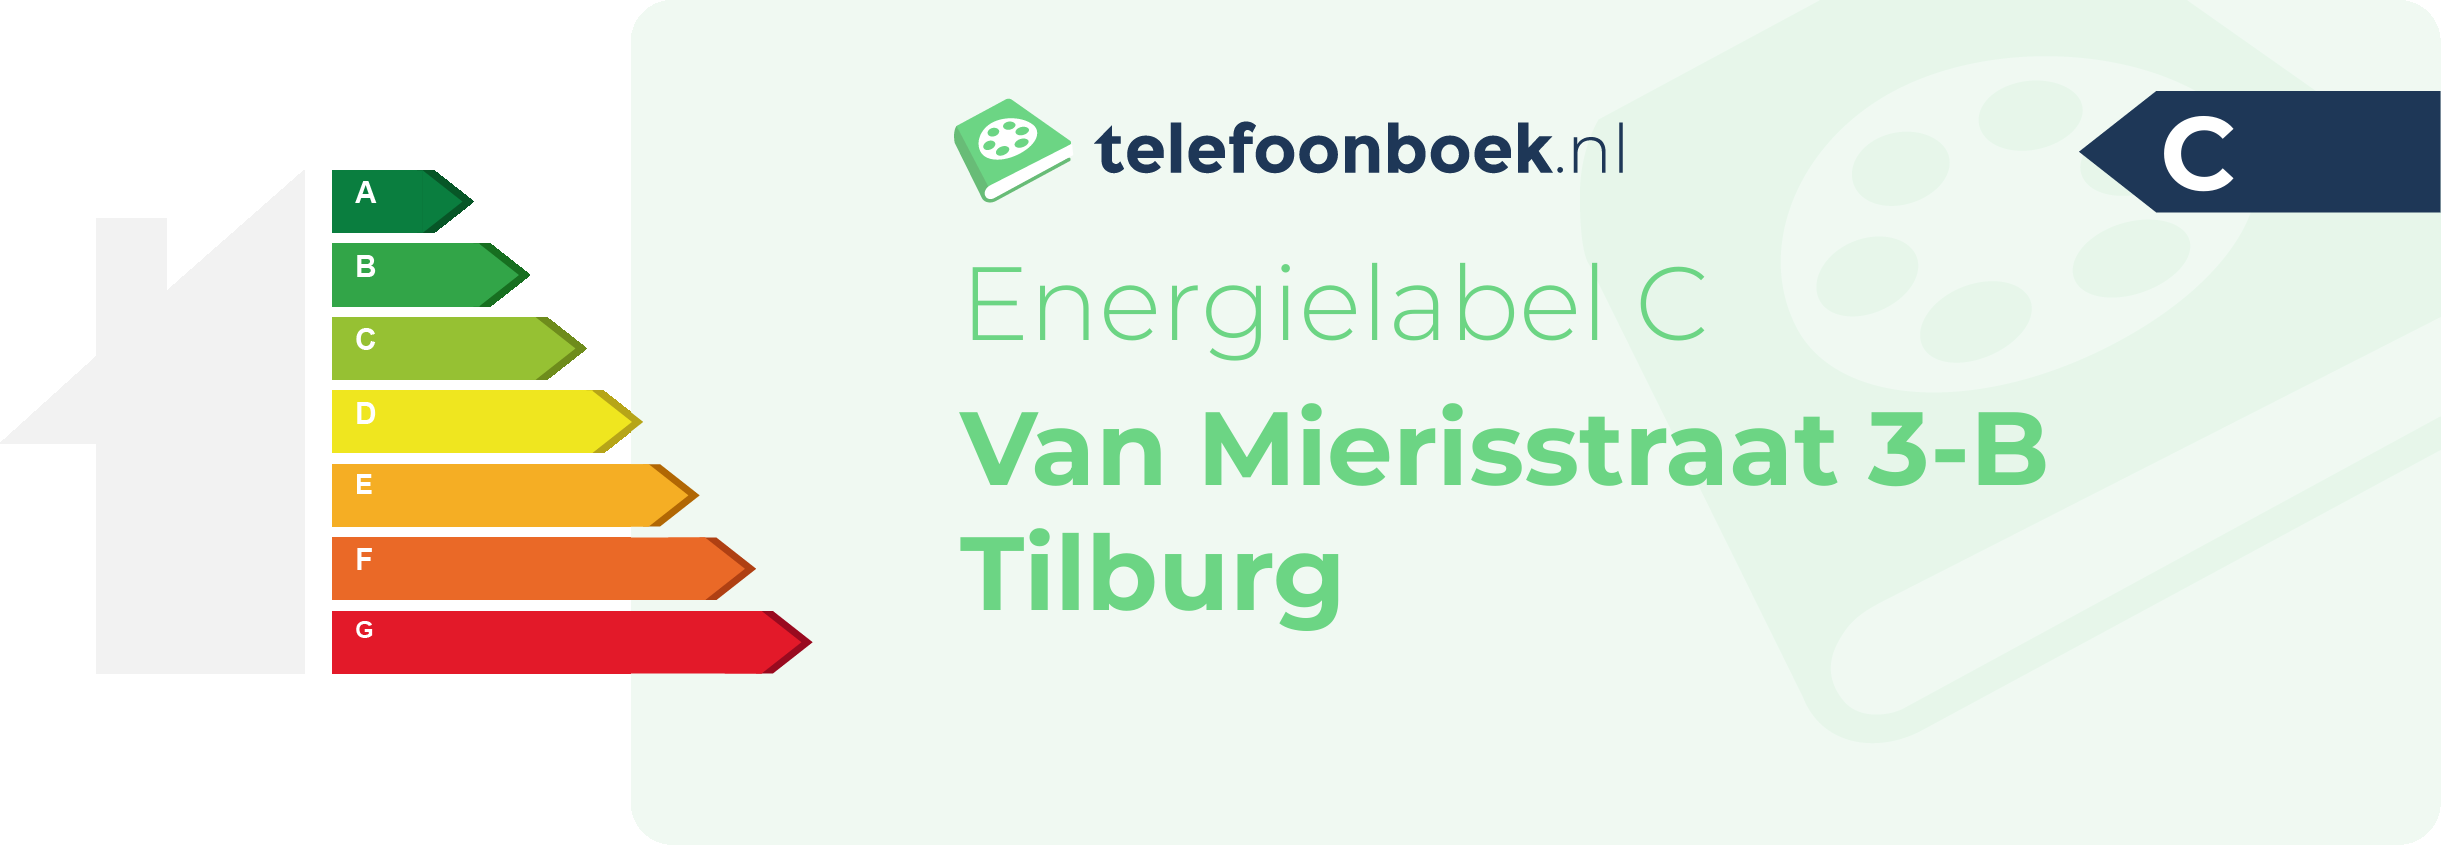 Energielabel Van Mierisstraat 3-B Tilburg